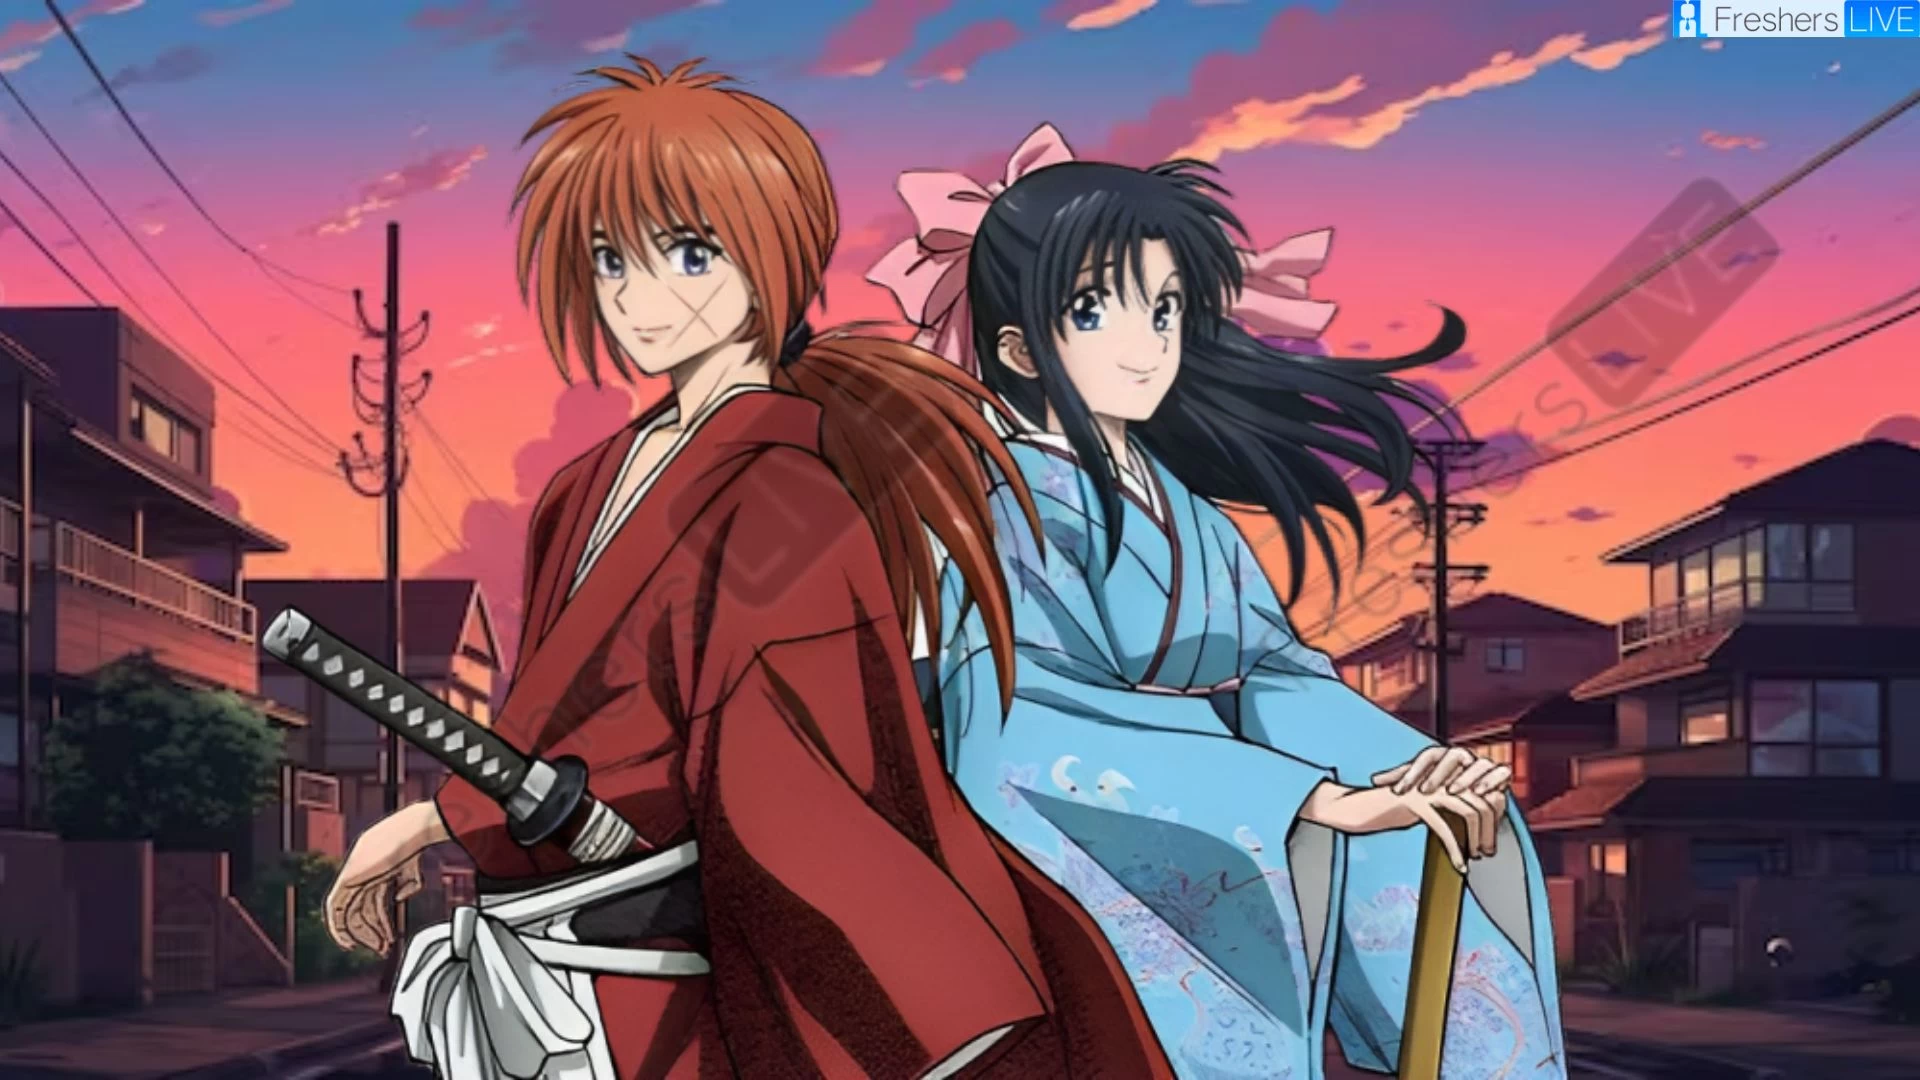 Rurouni Kenshin Temporada 1 Episodio 14 Fecha y hora de lanzamiento, cuenta regresiva, ¿cuándo saldrá?